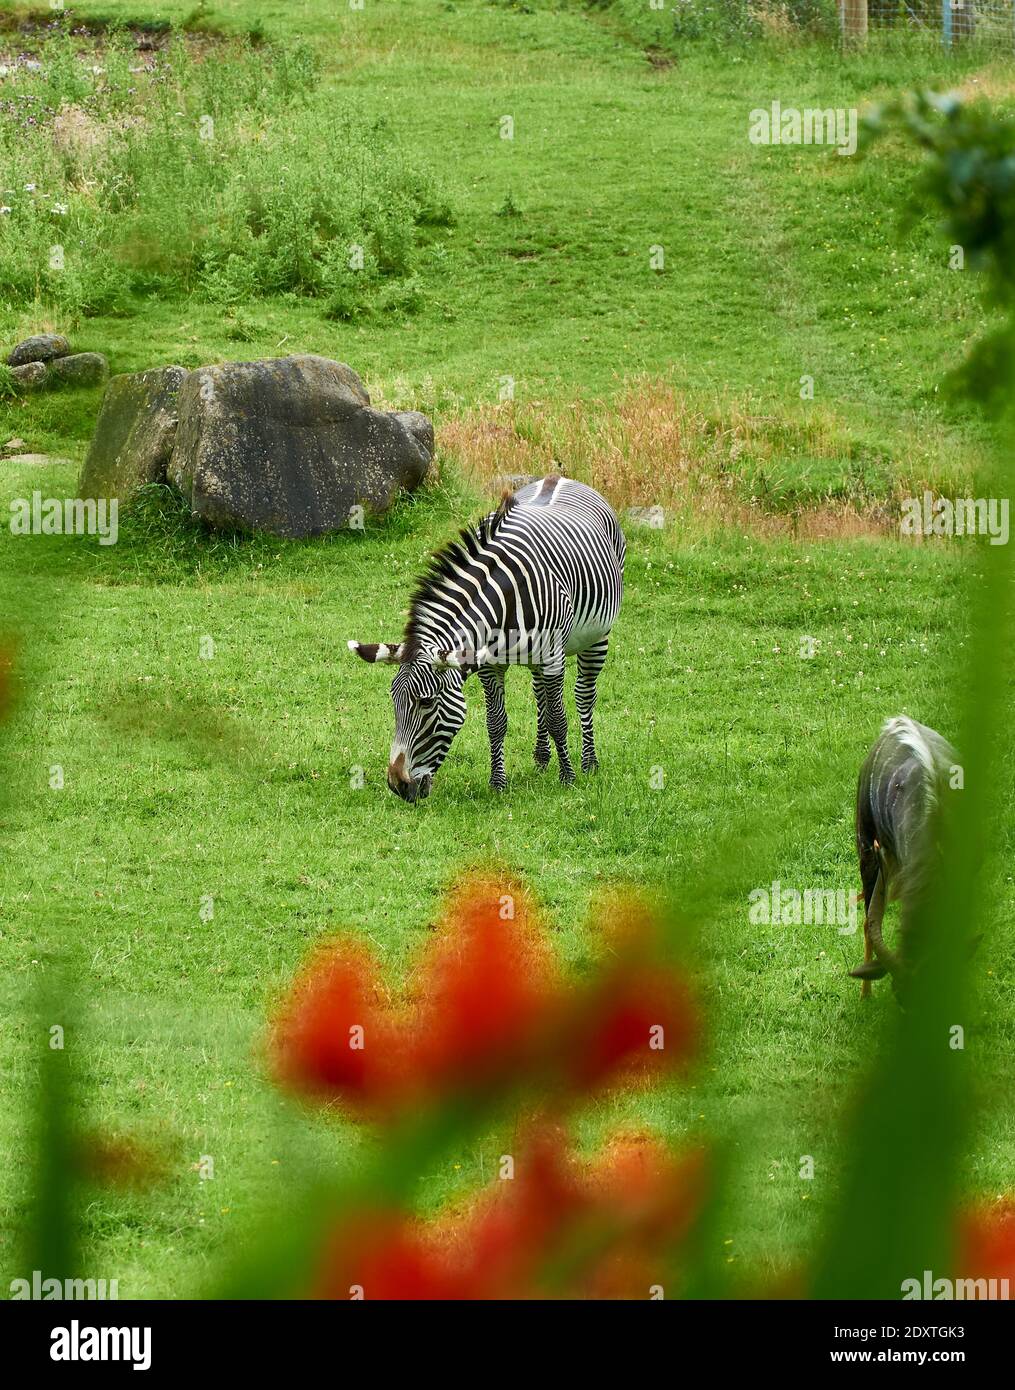 Zebre pascolo in un campo in RZSS Edinburgh Zoo, Scozia, Regno Unito Foto Stock